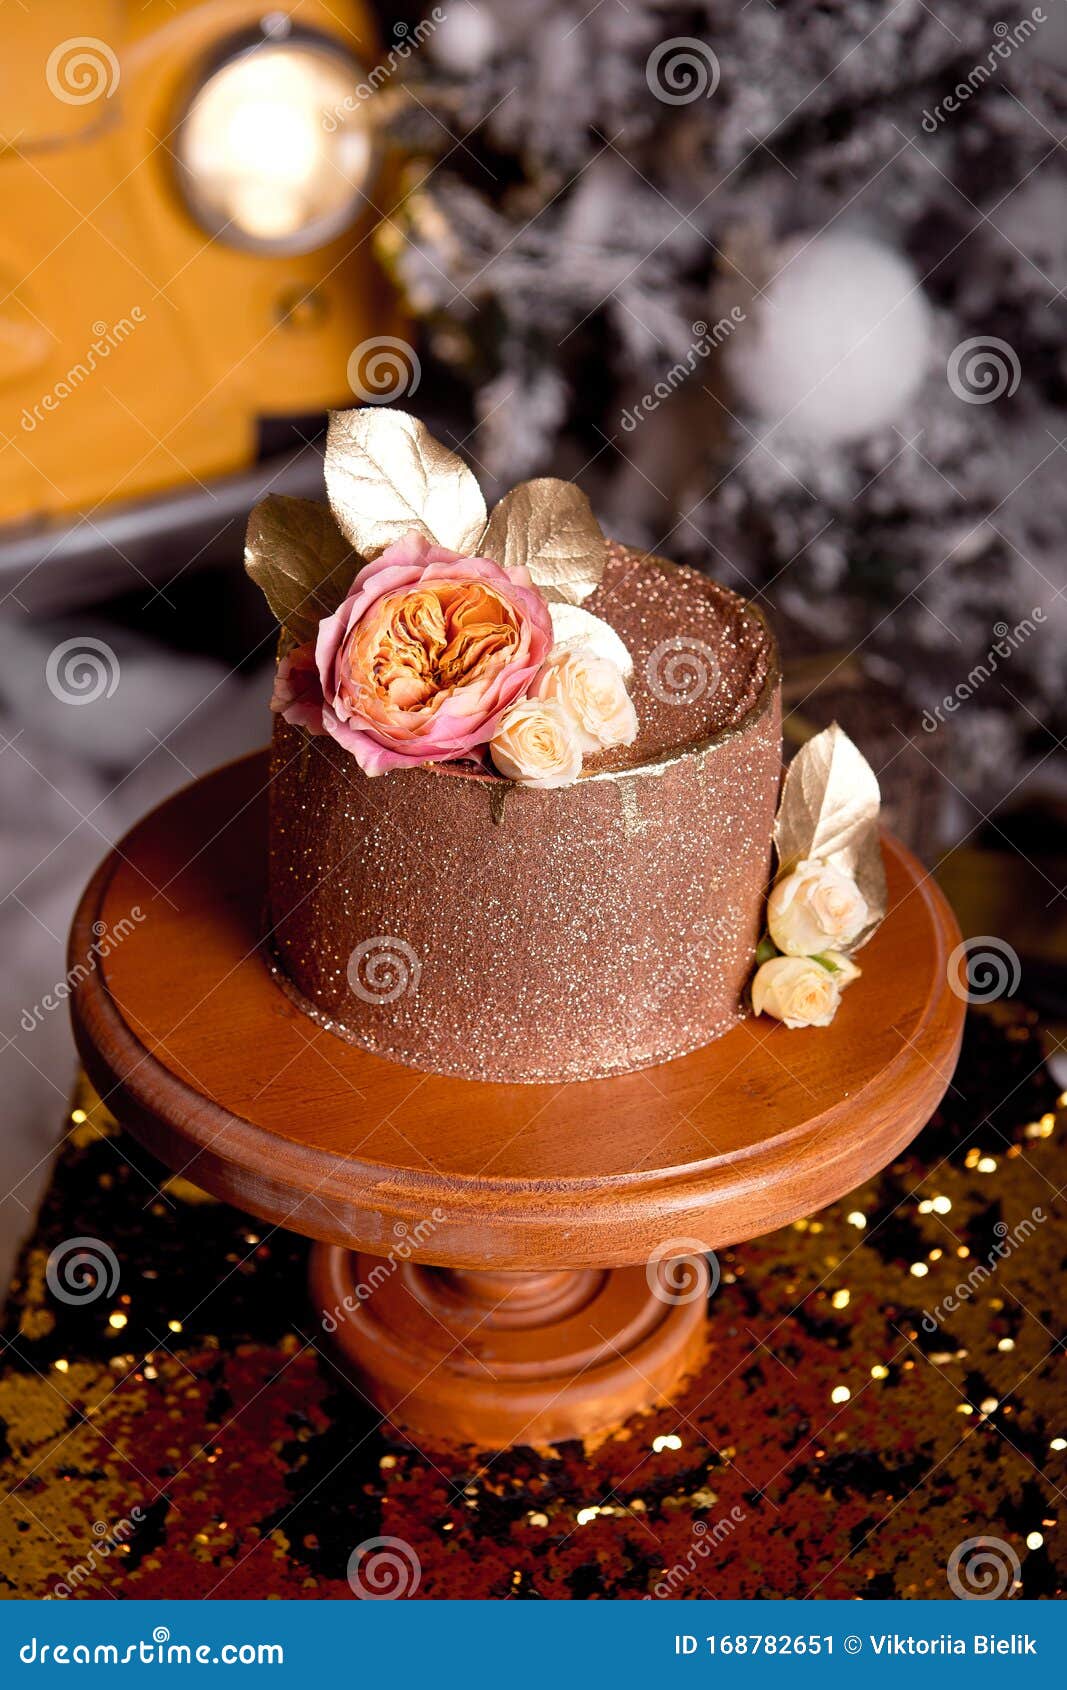 Torta De Chocolate Con Relleno De Frambuesa Y Crema De Pistacho, Decorada  Con Rosas Y Chispas De Gelatina Dorada En El Nuevo Imagen de archivo -  Imagen de brillo, capa: 168782651